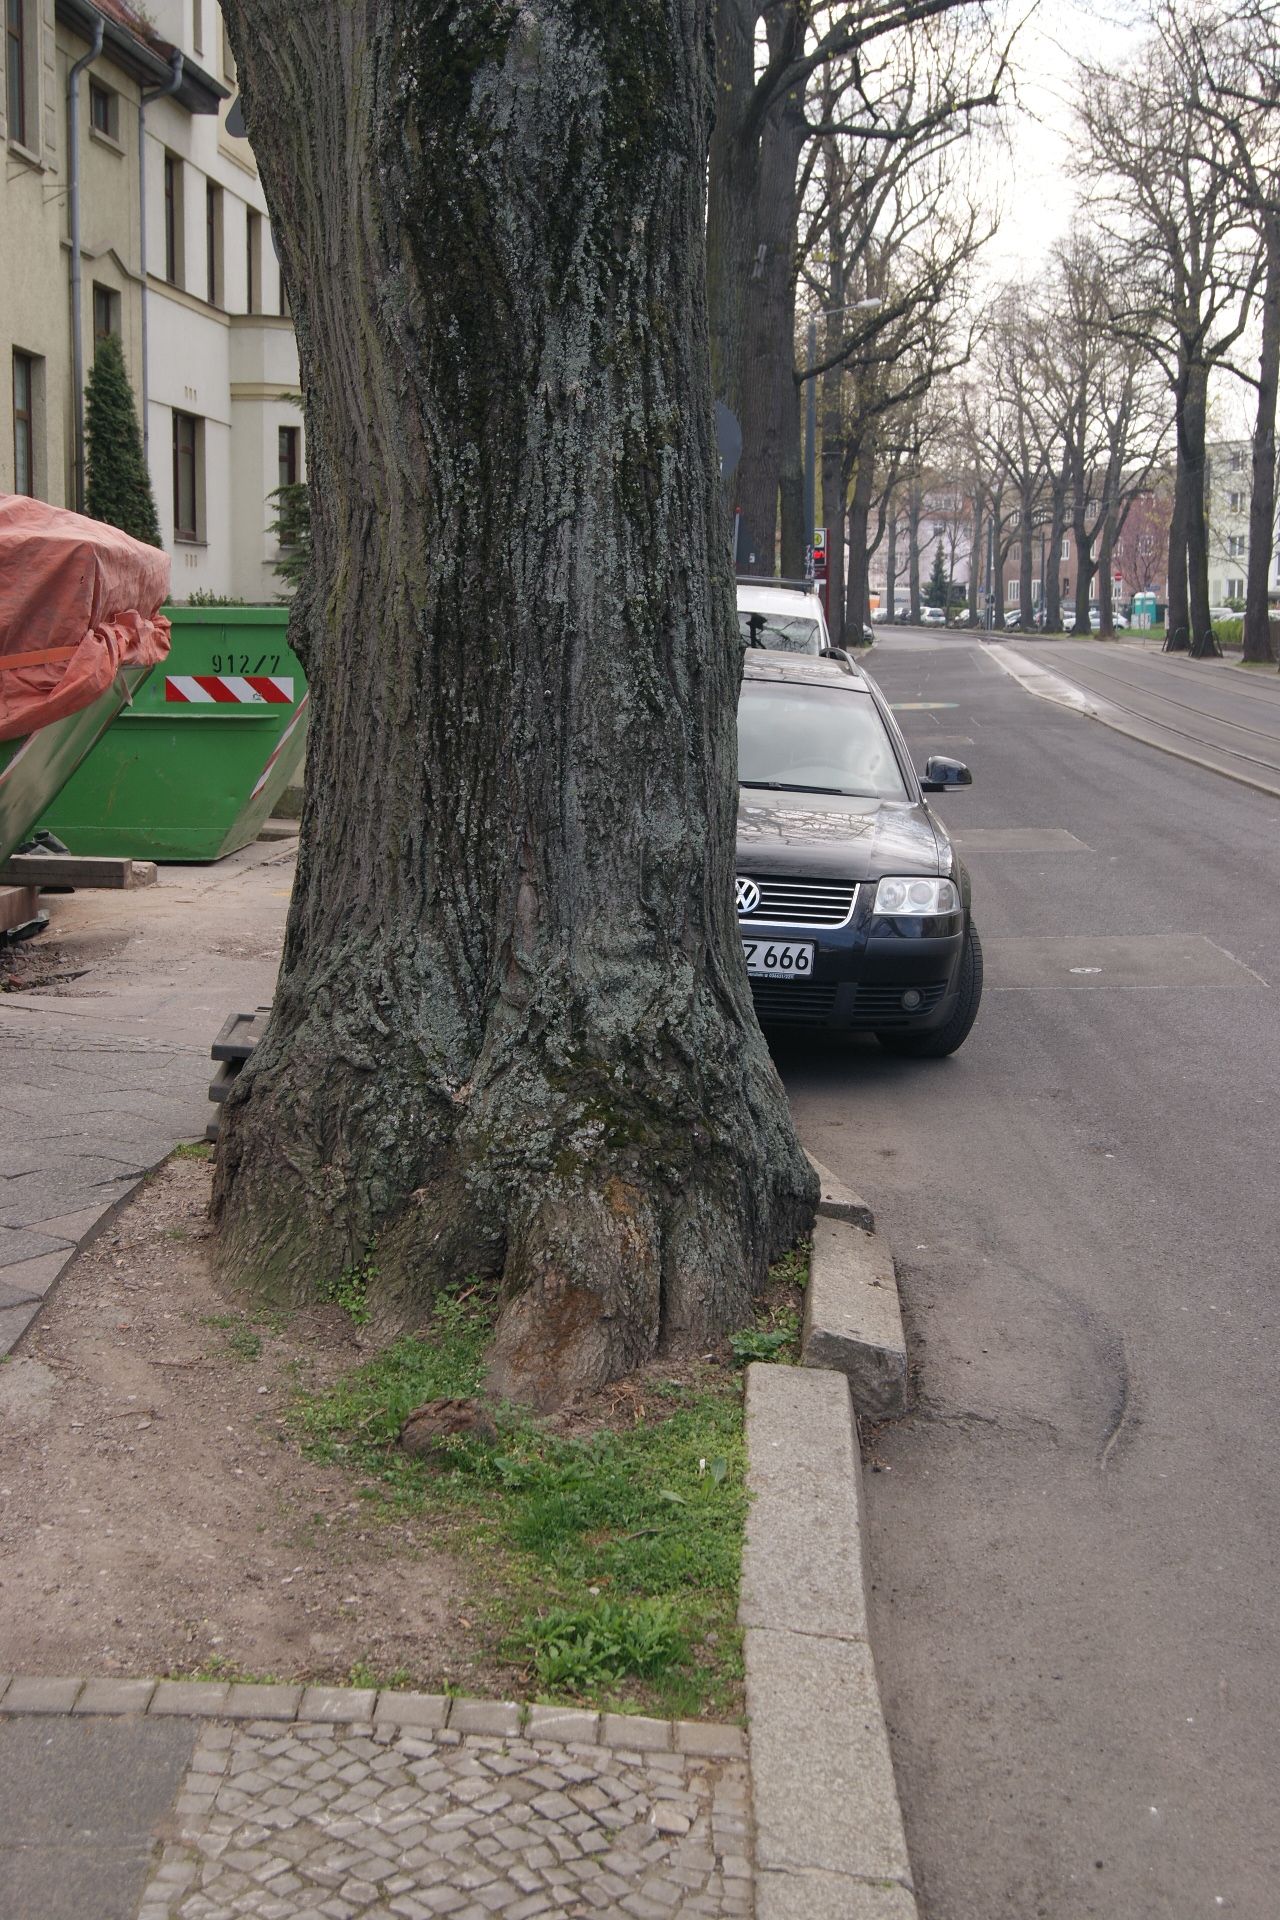 alter Baum auf Bürgersteig - eingeklemmt von Bordstein und Strasse; parkendes Auto dahinter